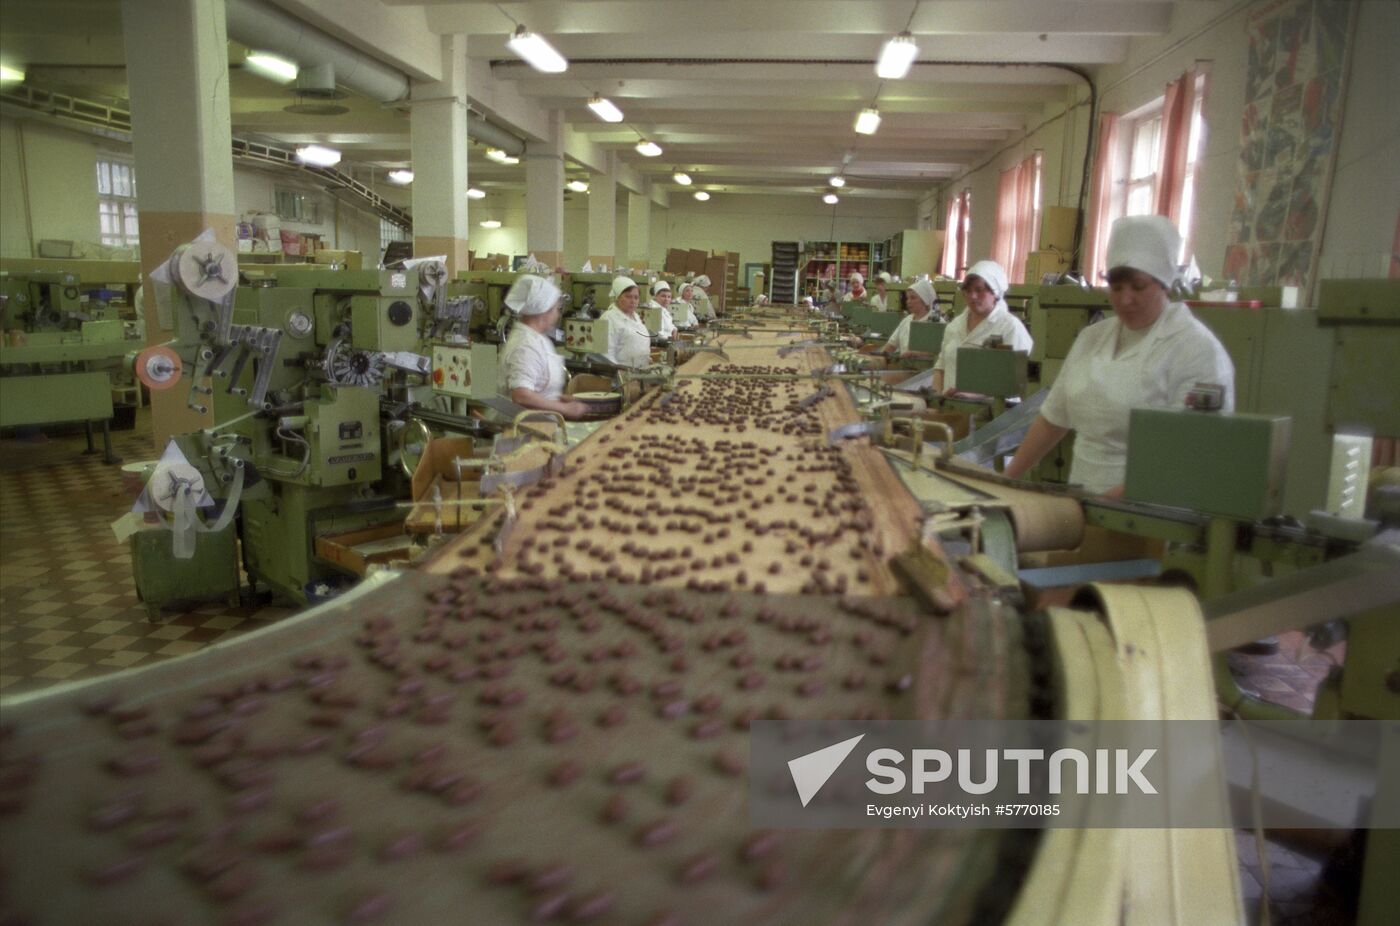 Kommunarka confectionery factory in Minsk